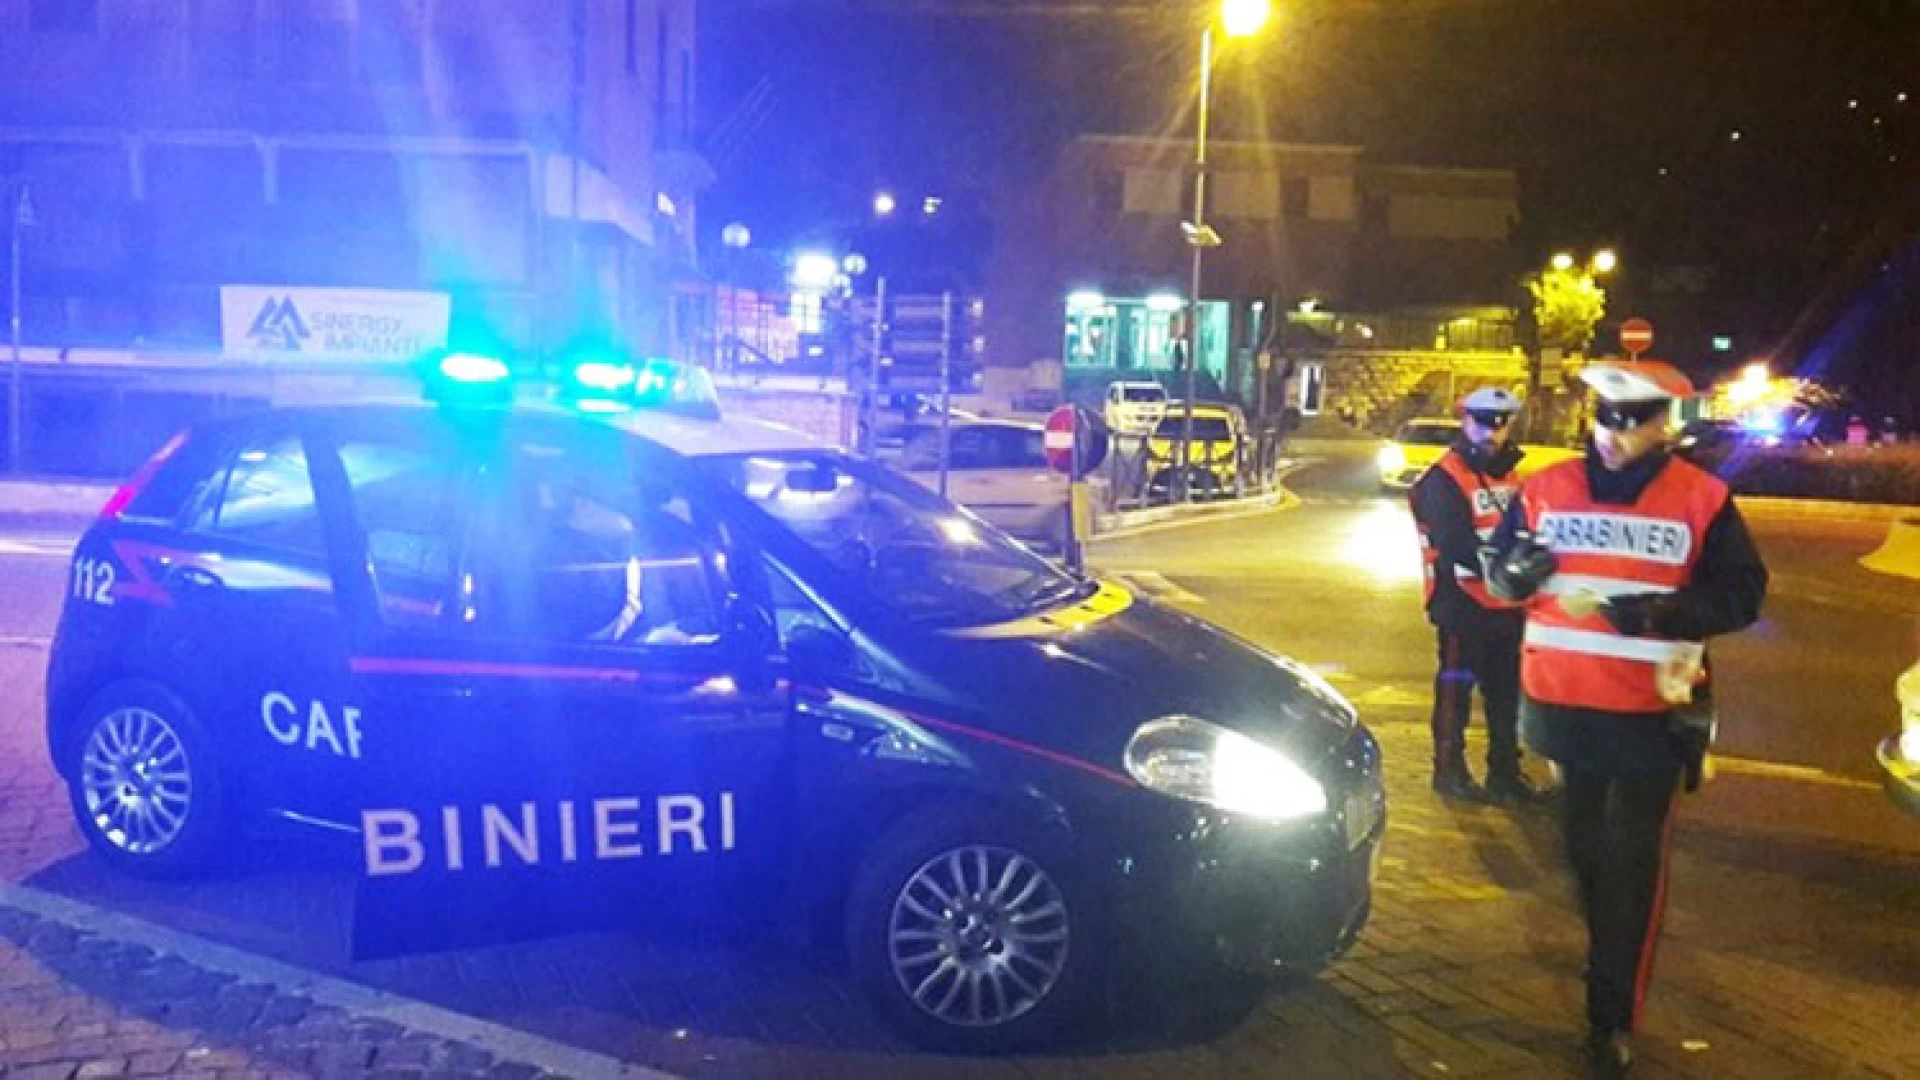 Vasta operazione dei Carabinieri tra Isernia e Venafro. Sequestri e denunce per dieci persone. A Filignano giovane del posto beccato completamente ubriaco alla guida.